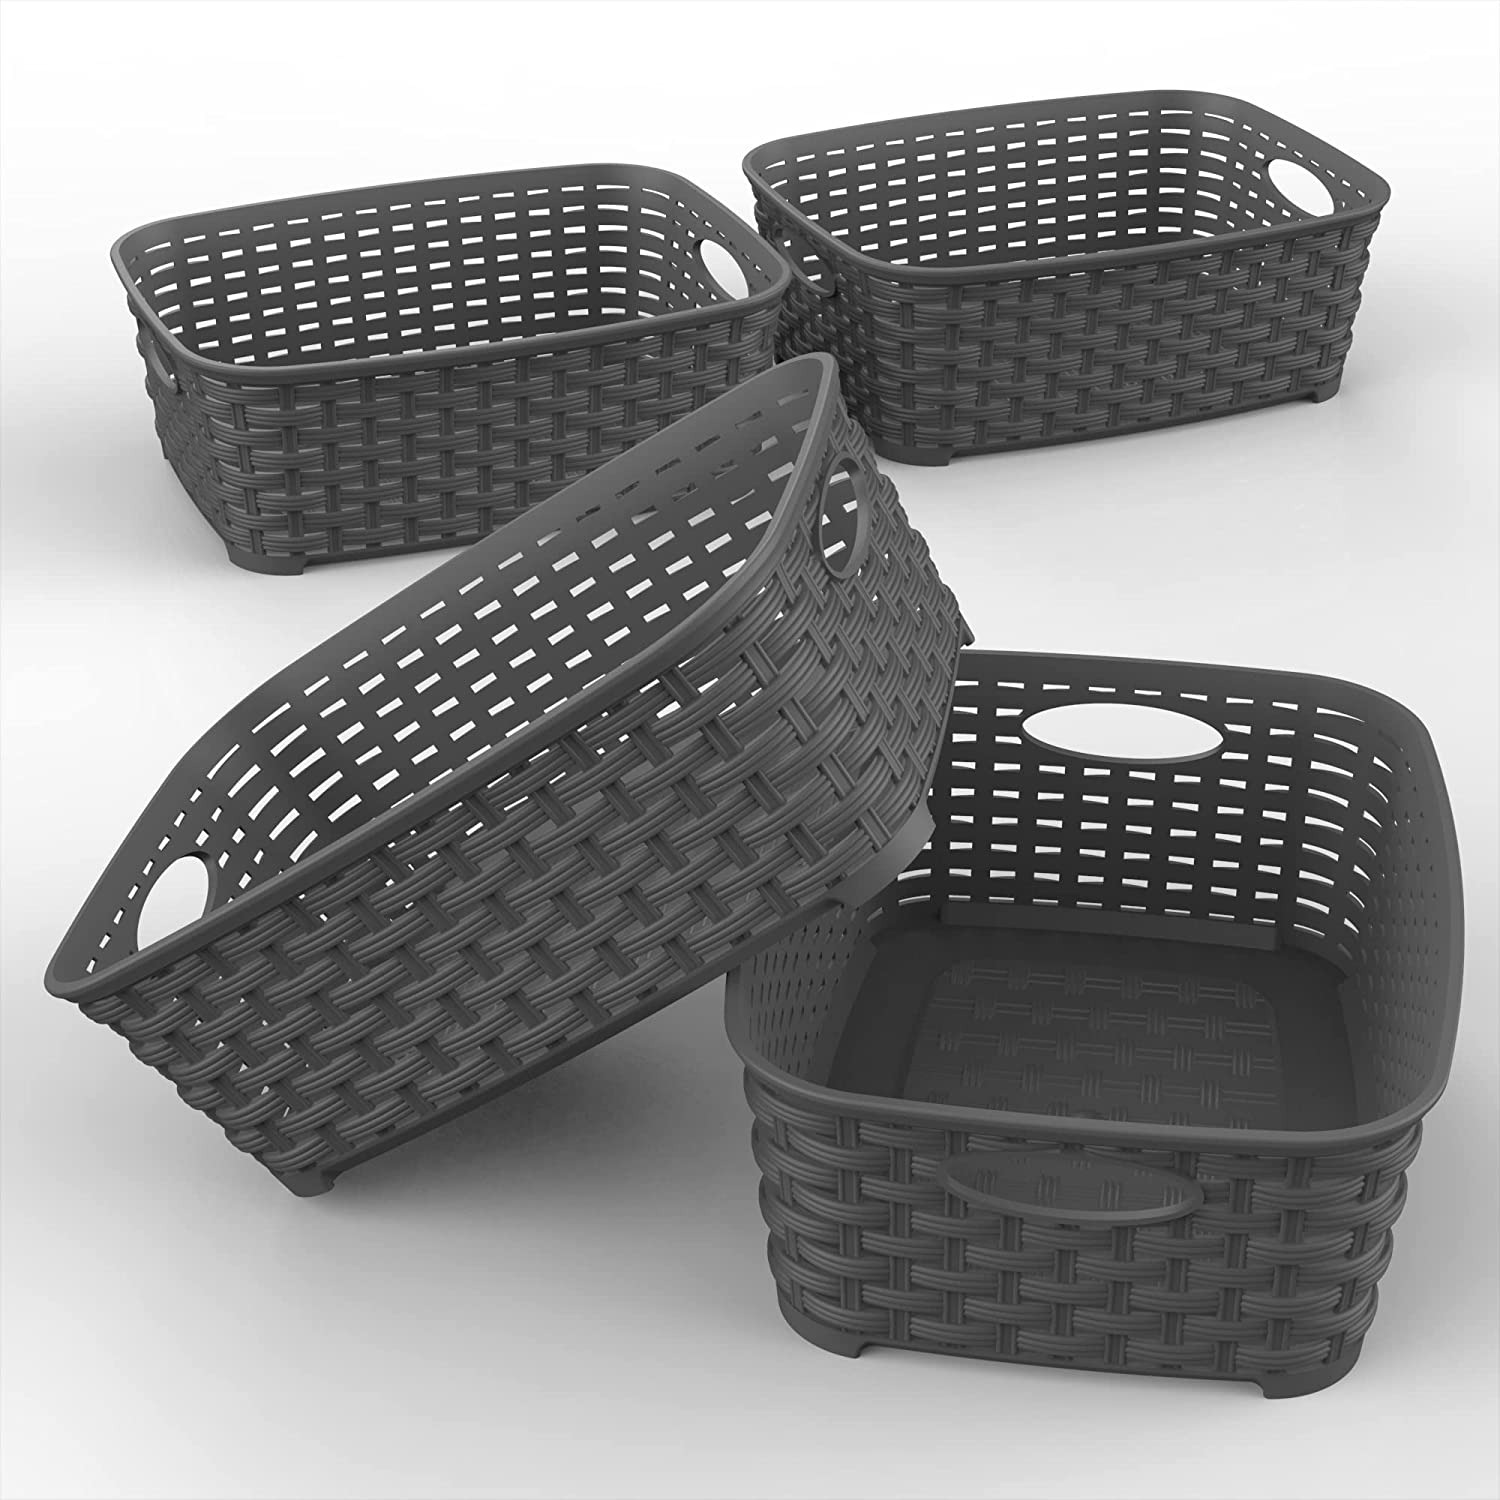 muellerhome_Stackable Storage Baskets – Dark Grey5